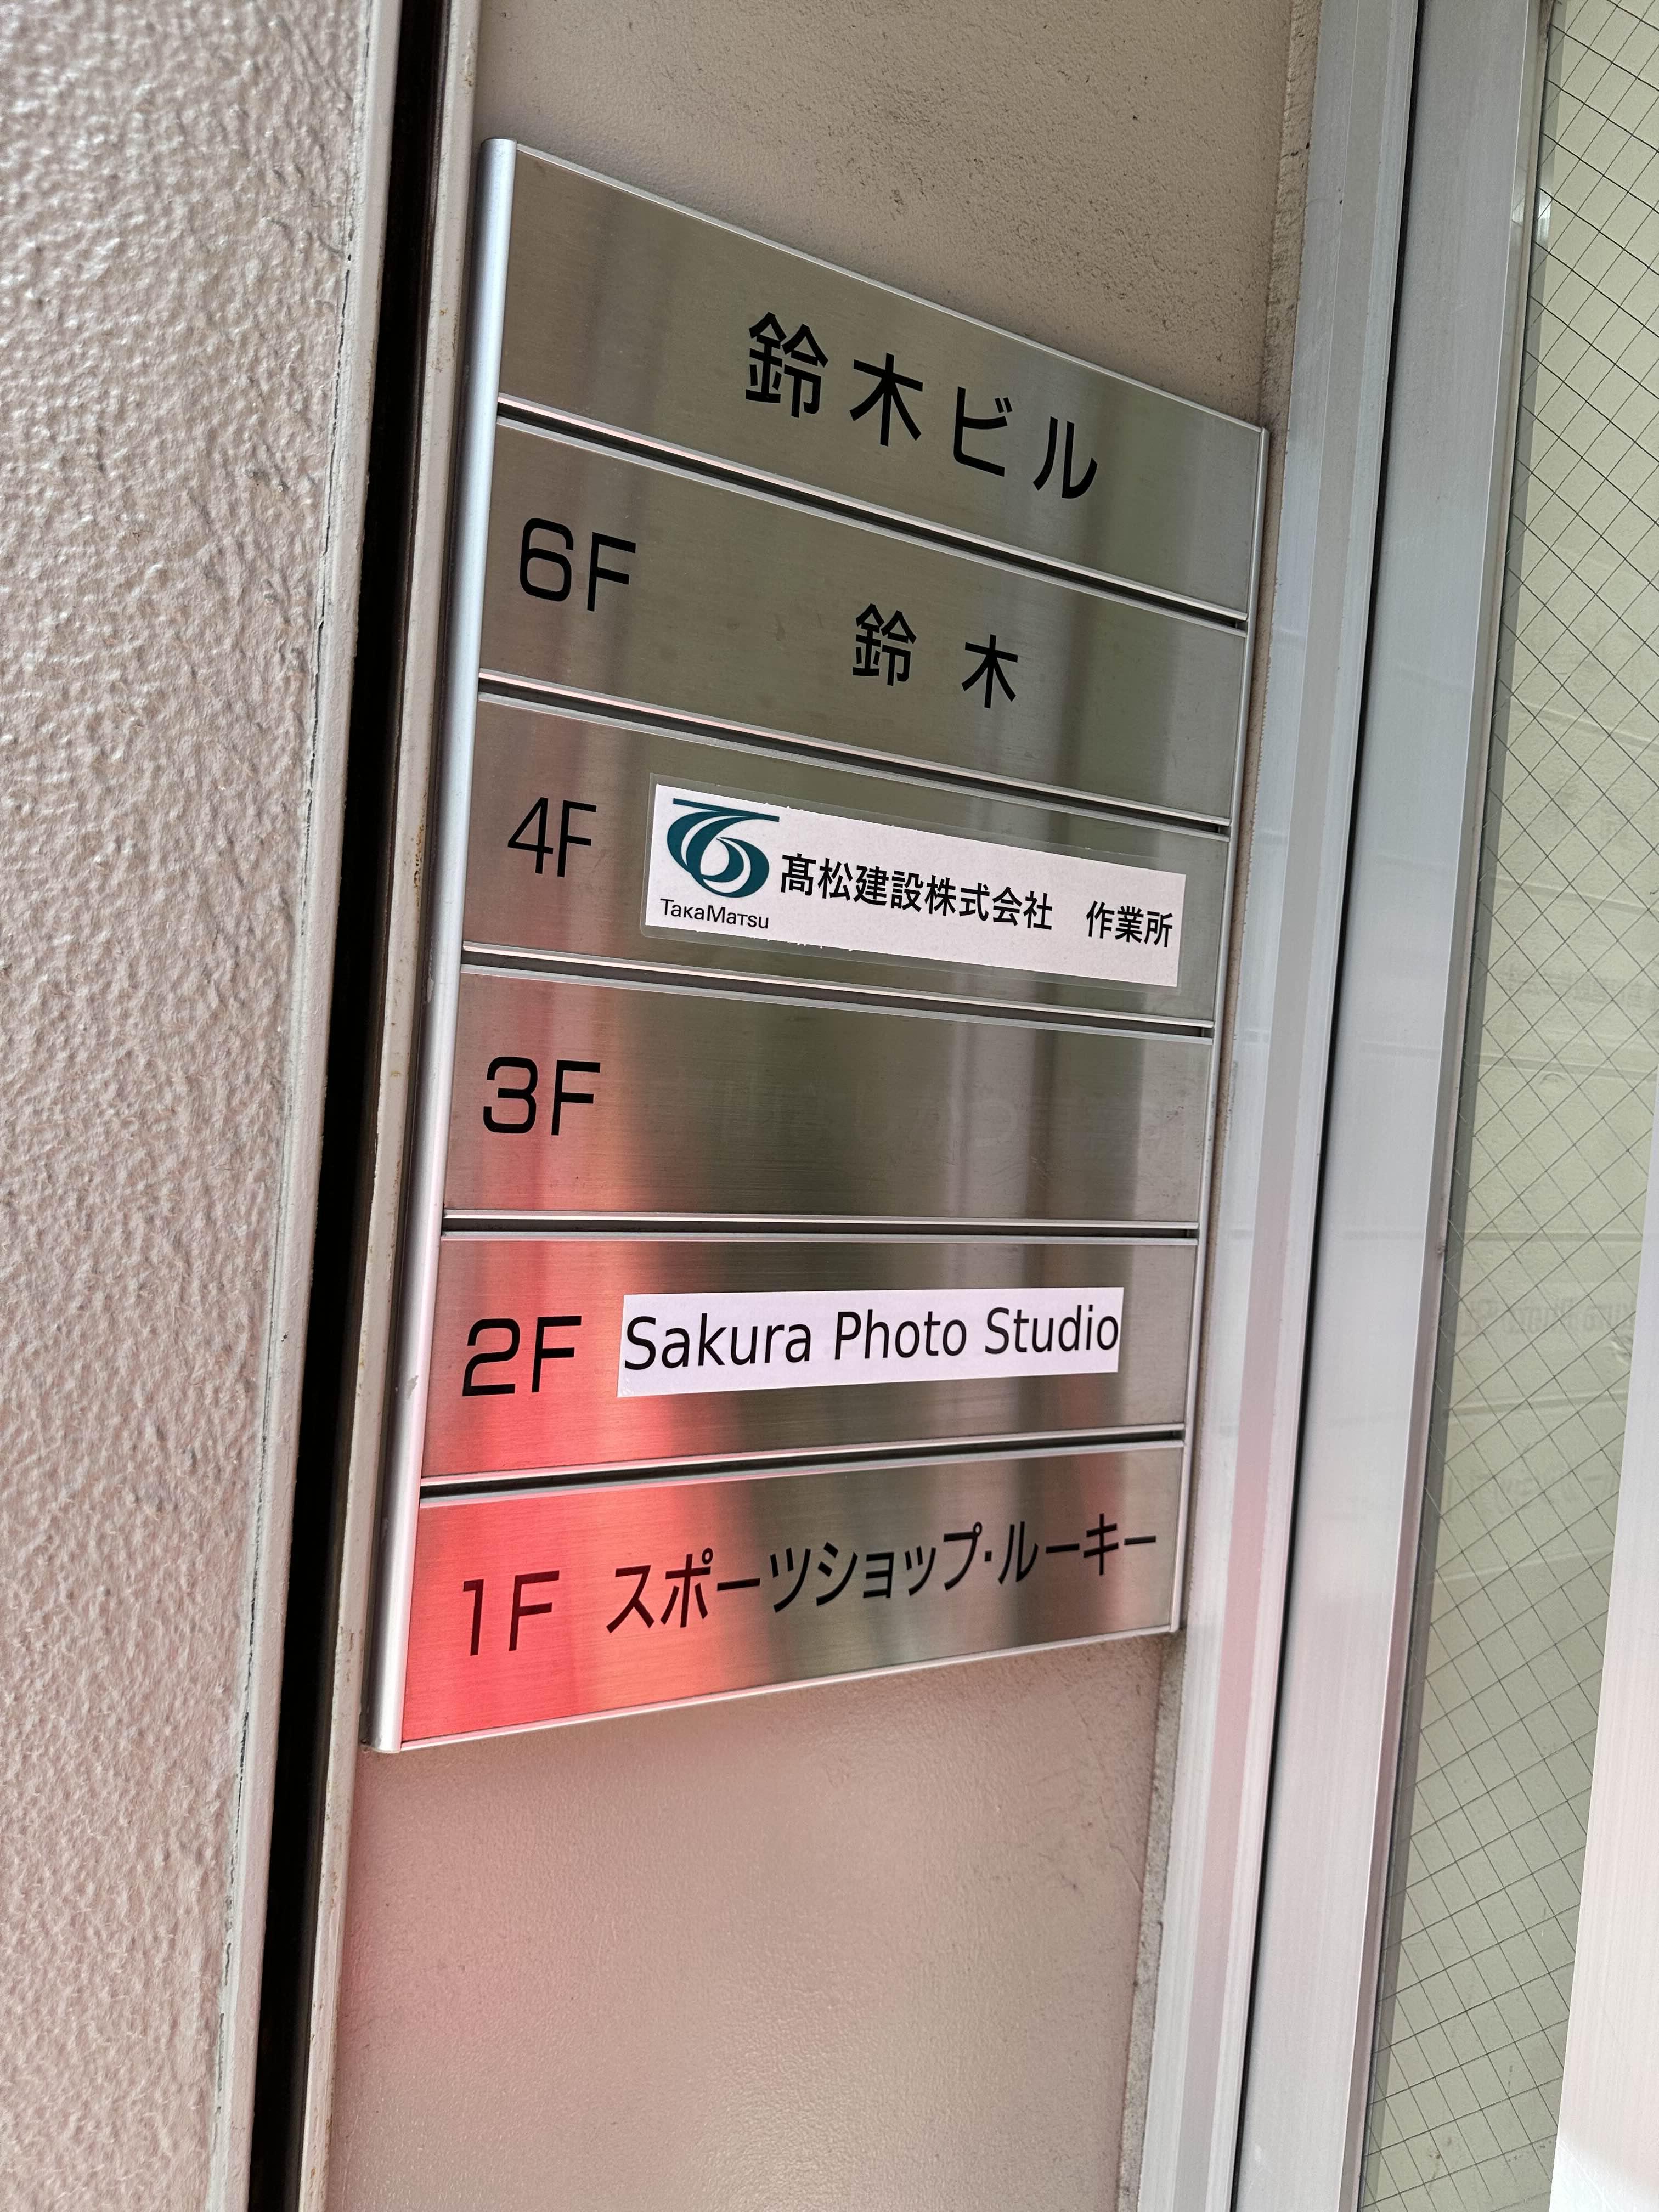 사쿠라 포토 스튜디오(sakura photo studio)